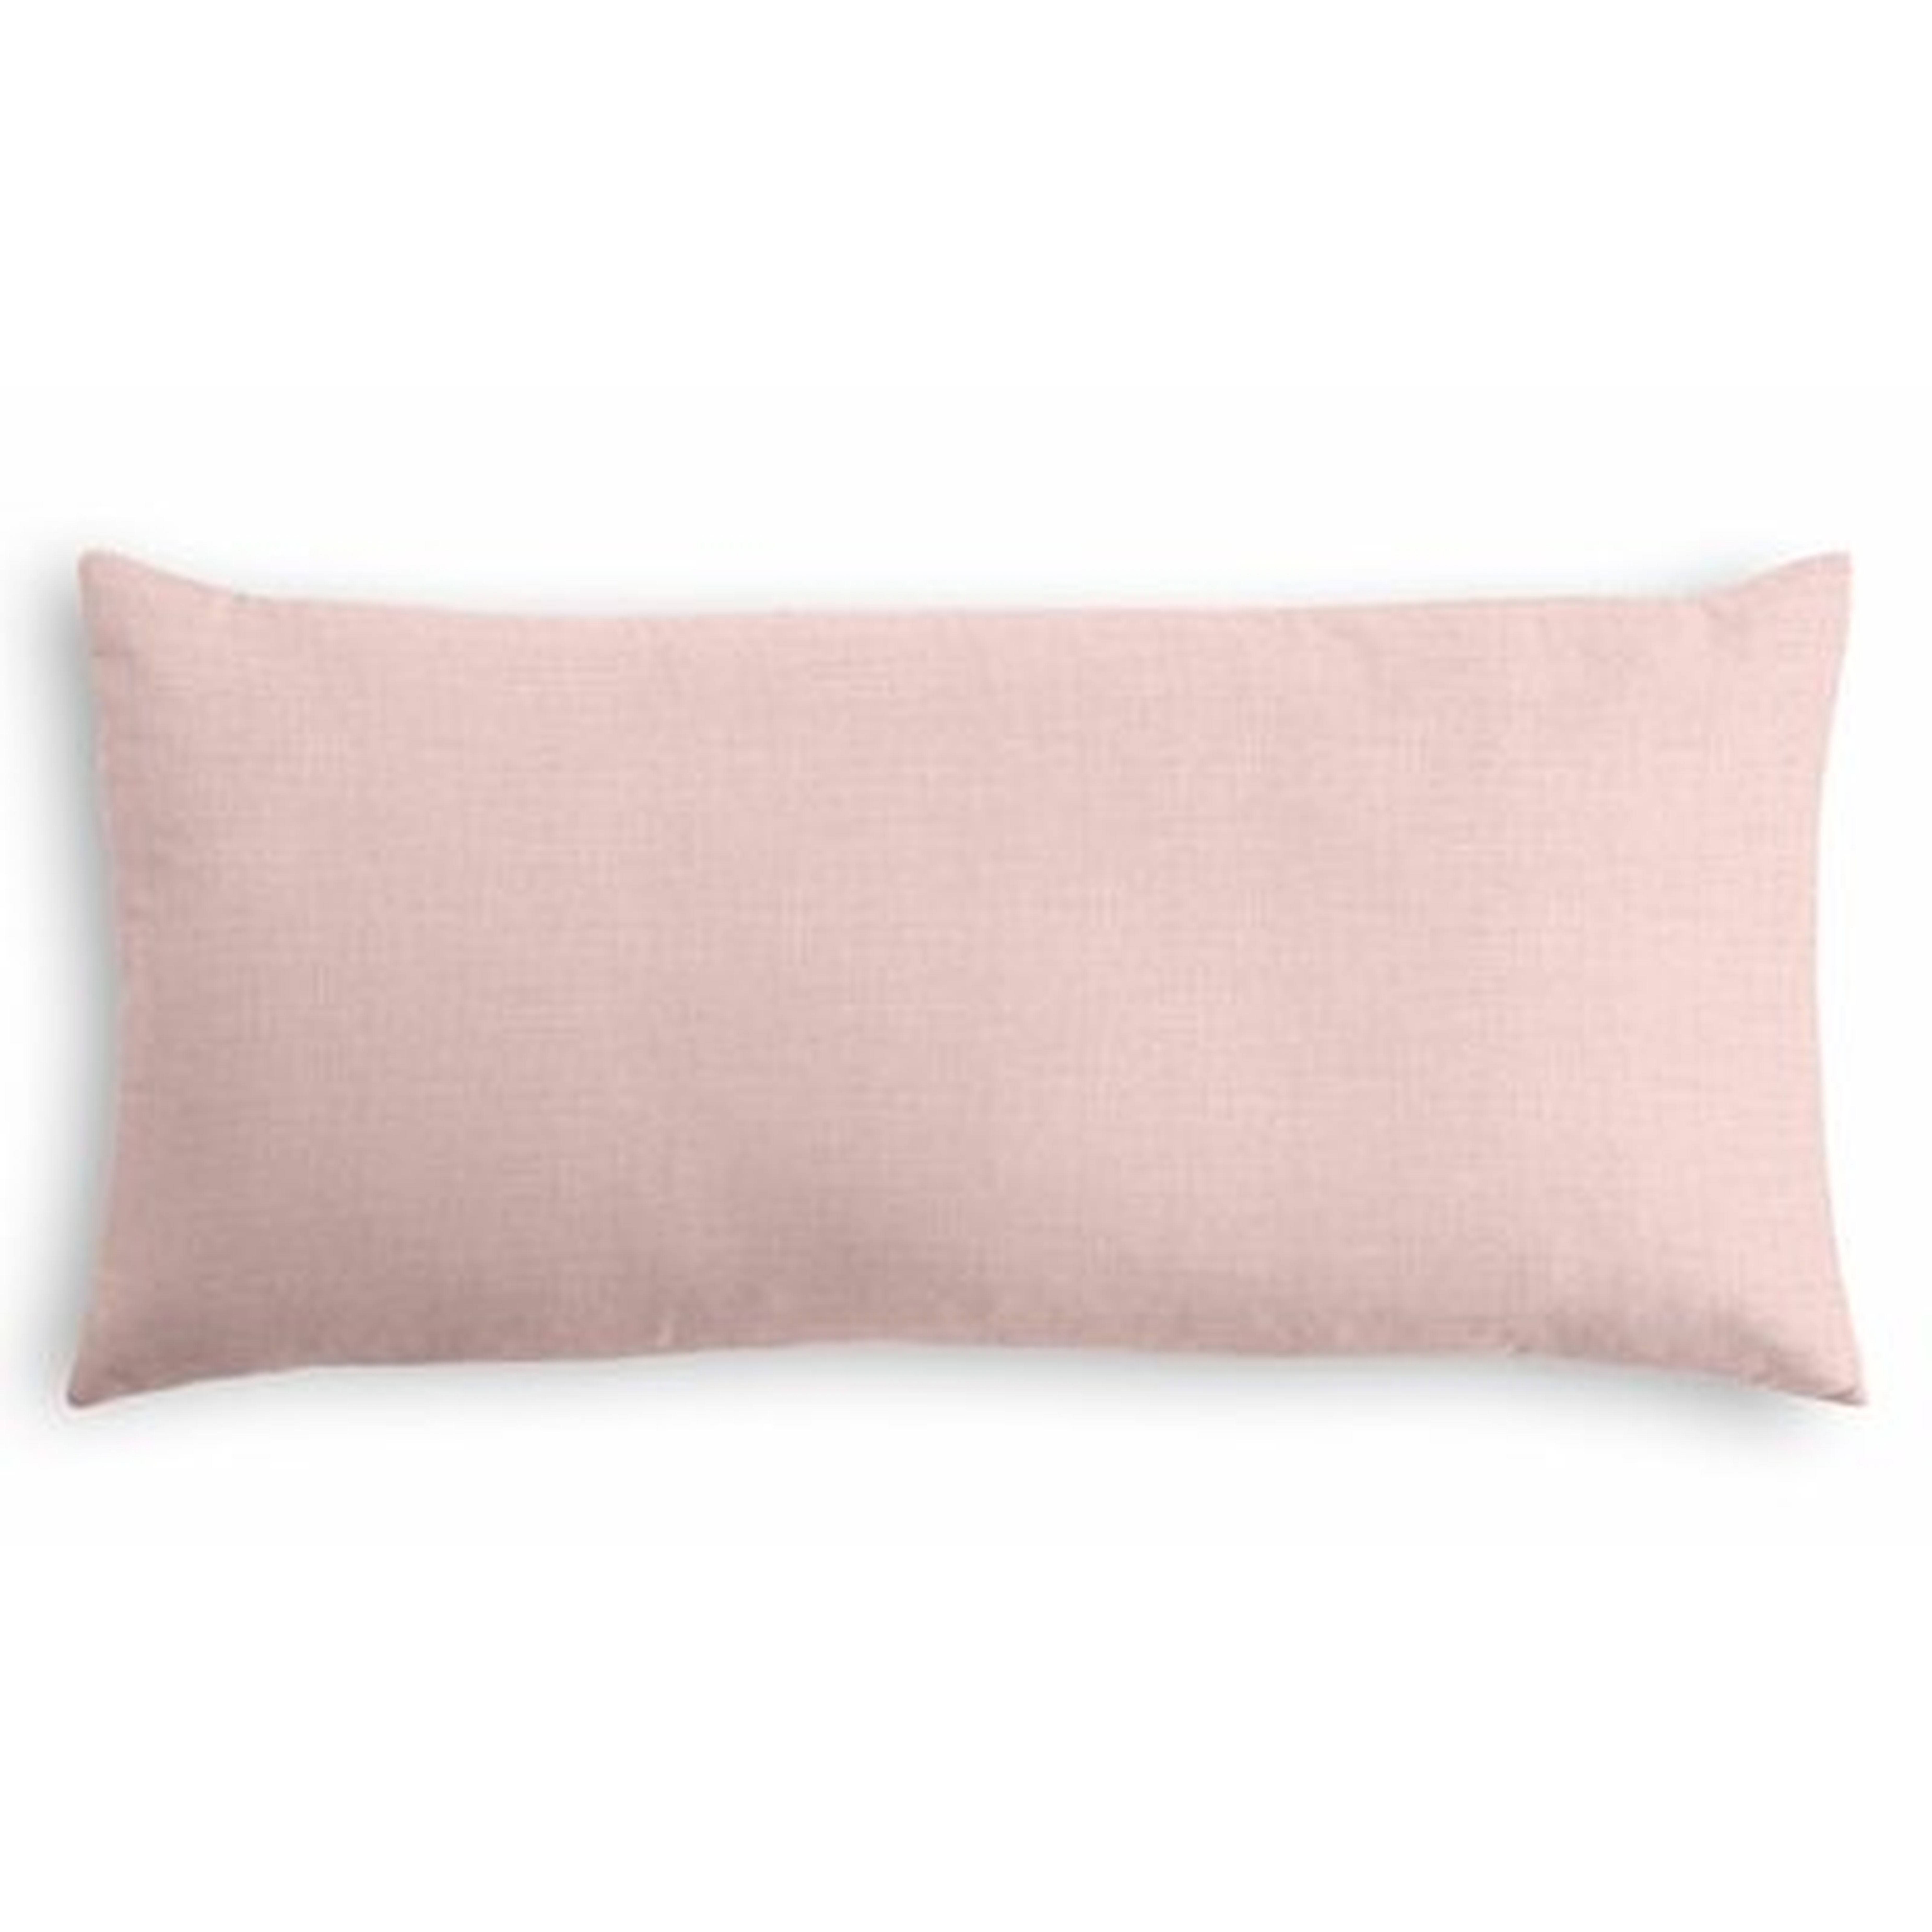 Heracleitus Lumbar Pillow Cover - Wayfair